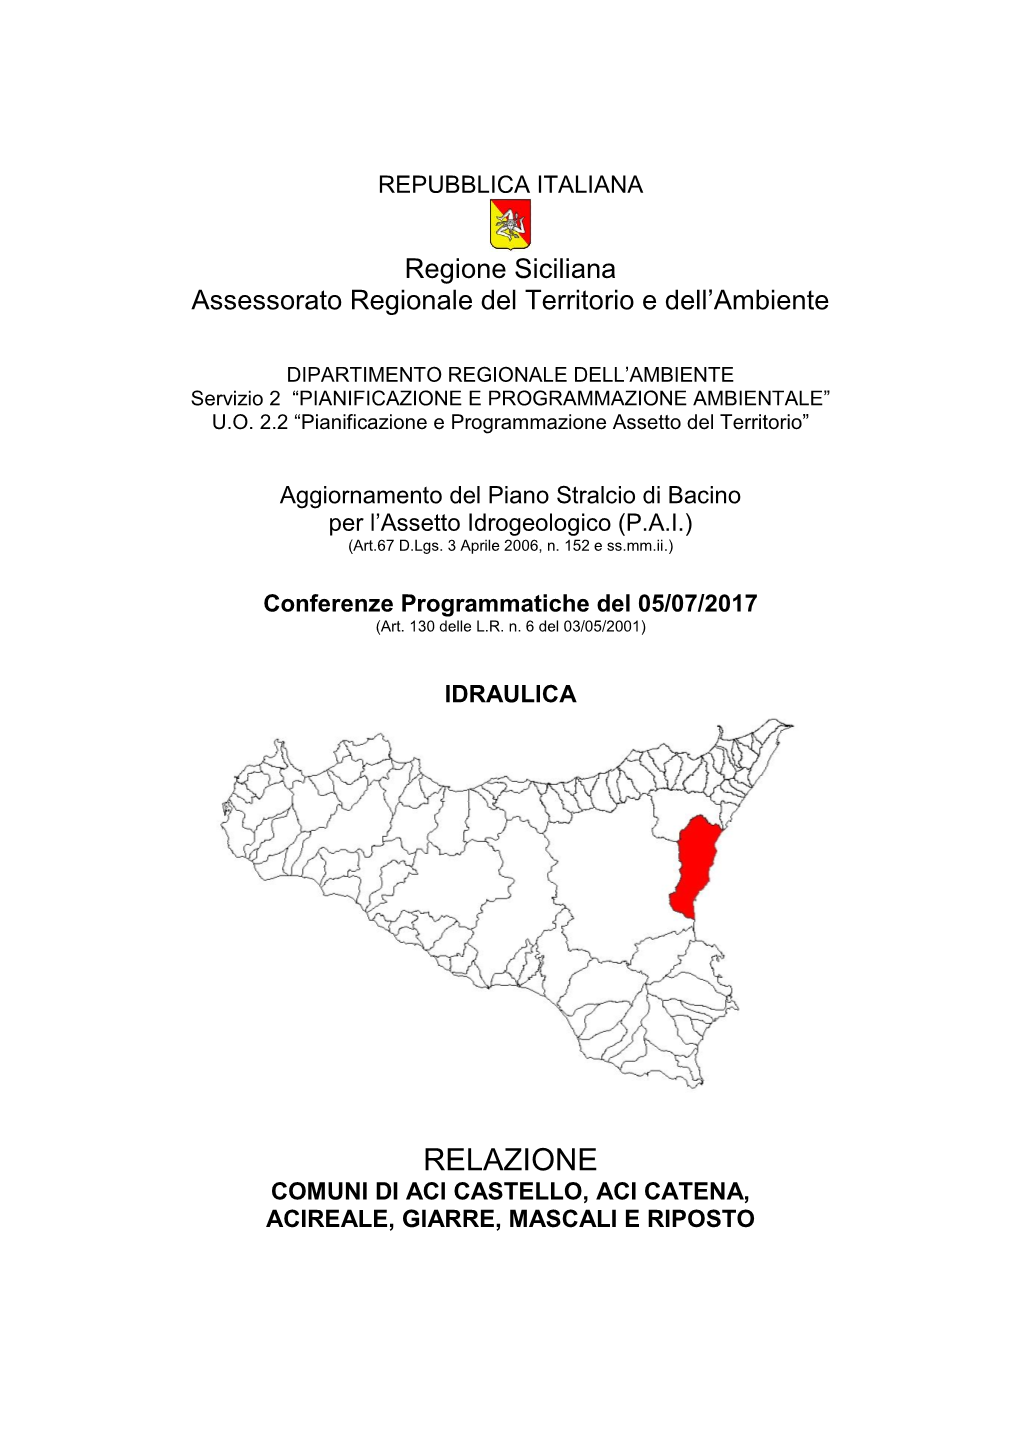 Relazione Comuni Di Aci Castello, Aci Catena, Acireale, Giarre, Mascali E Riposto